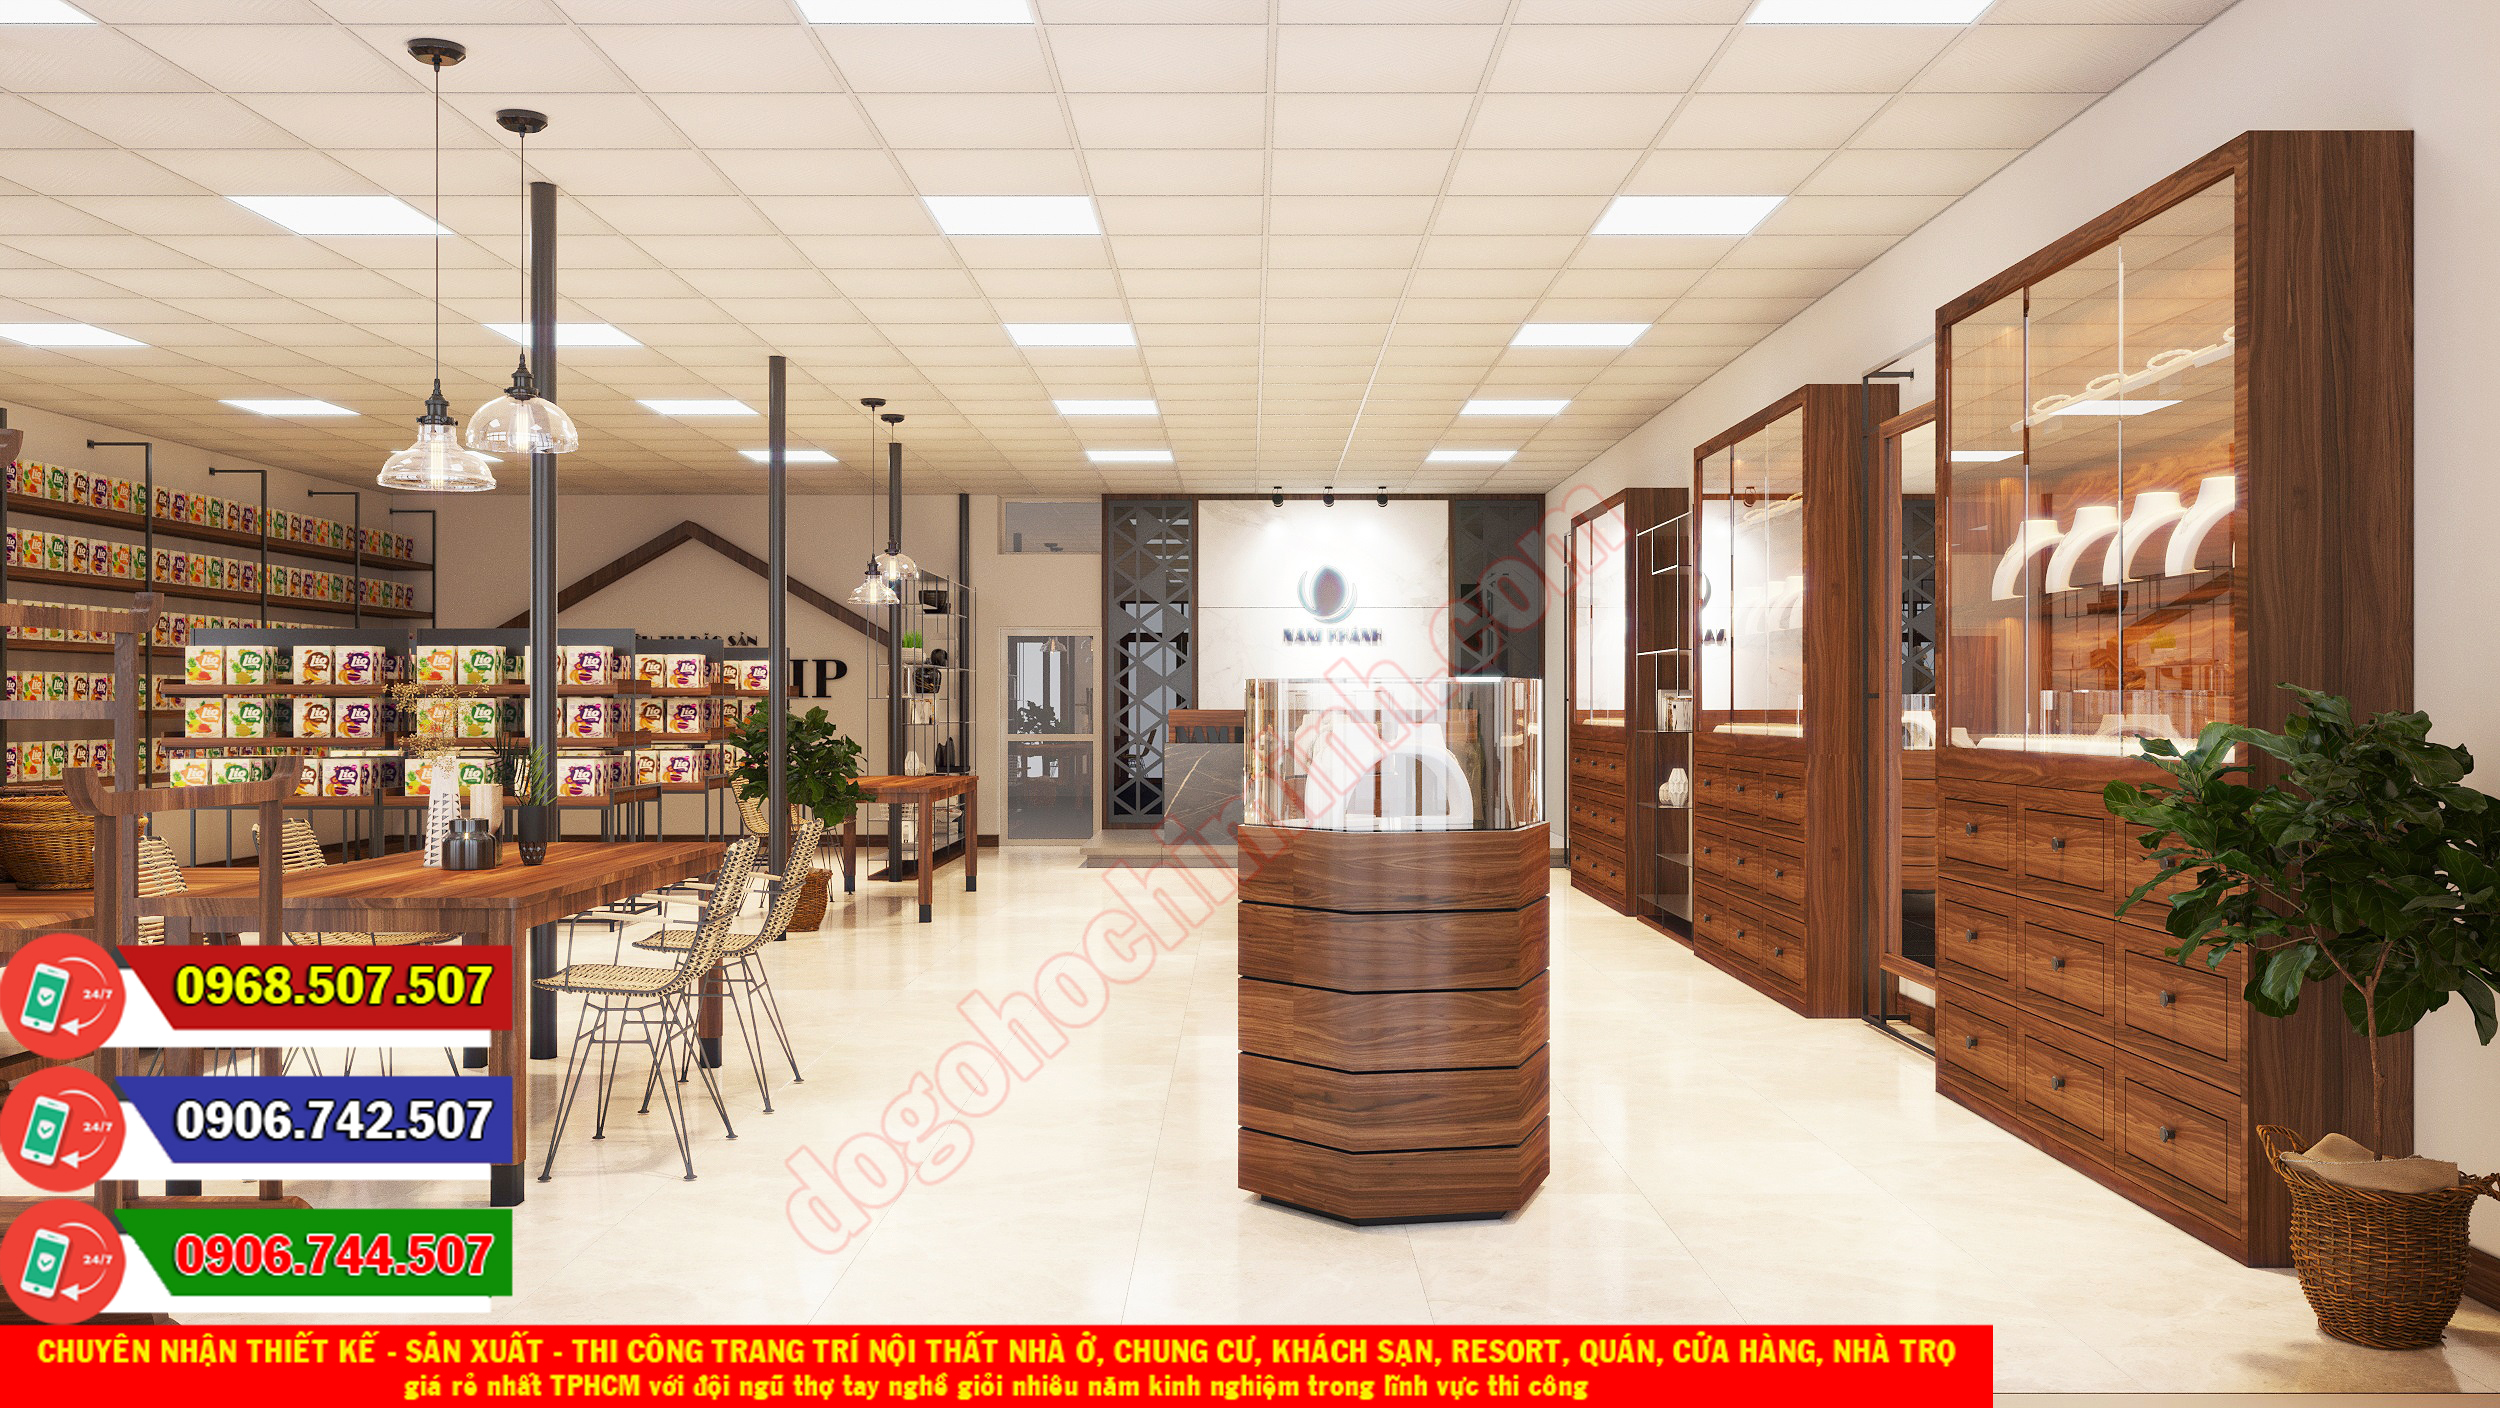 Thi công đồ gỗ nội thất cửa hàng giá rẻ nhất Bình Hưng Hòa TPHCM